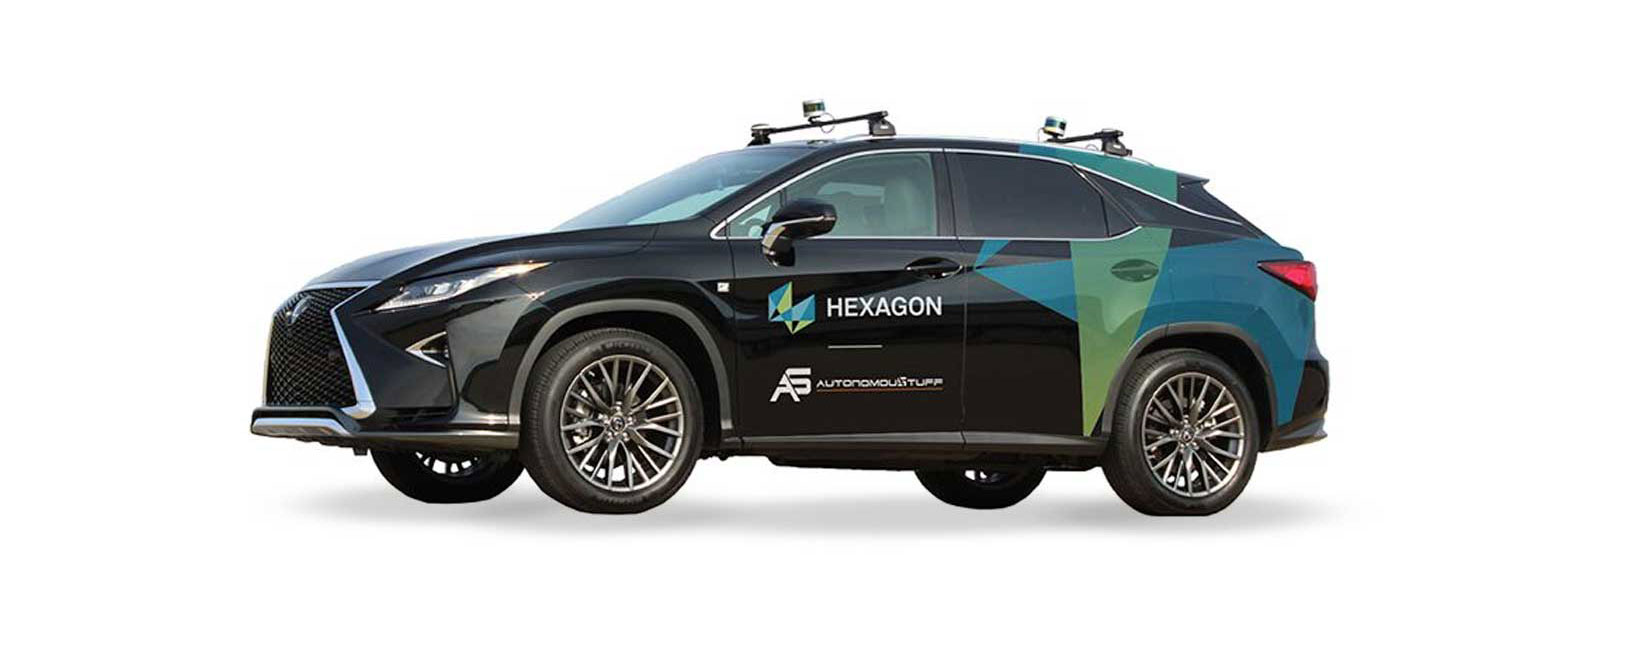 Immagine di un veicolo a marchio Hexagon con capacità autonome